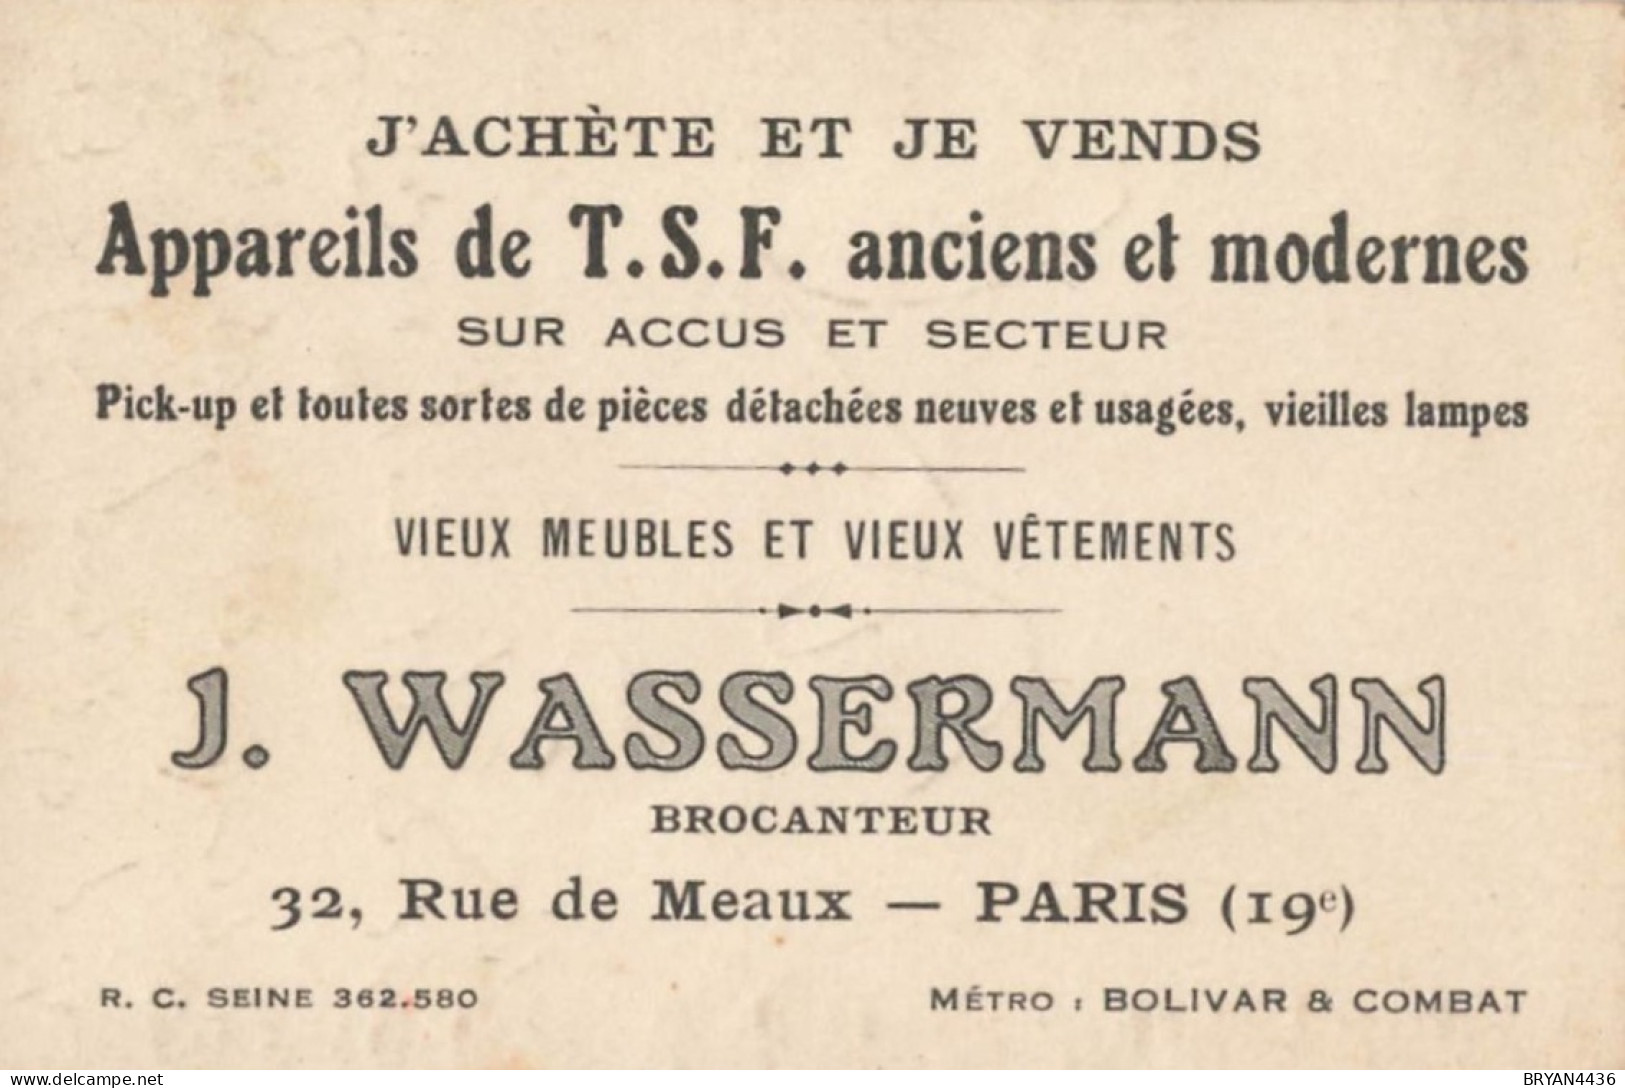 PARIS - 19 ème - BROCANTEUR  - J. WASSEMANN - 32, RUE De MEAUX - CARTE COMMERCIALE ANCIENNE - (7x10,5cm) - Distrito: 19